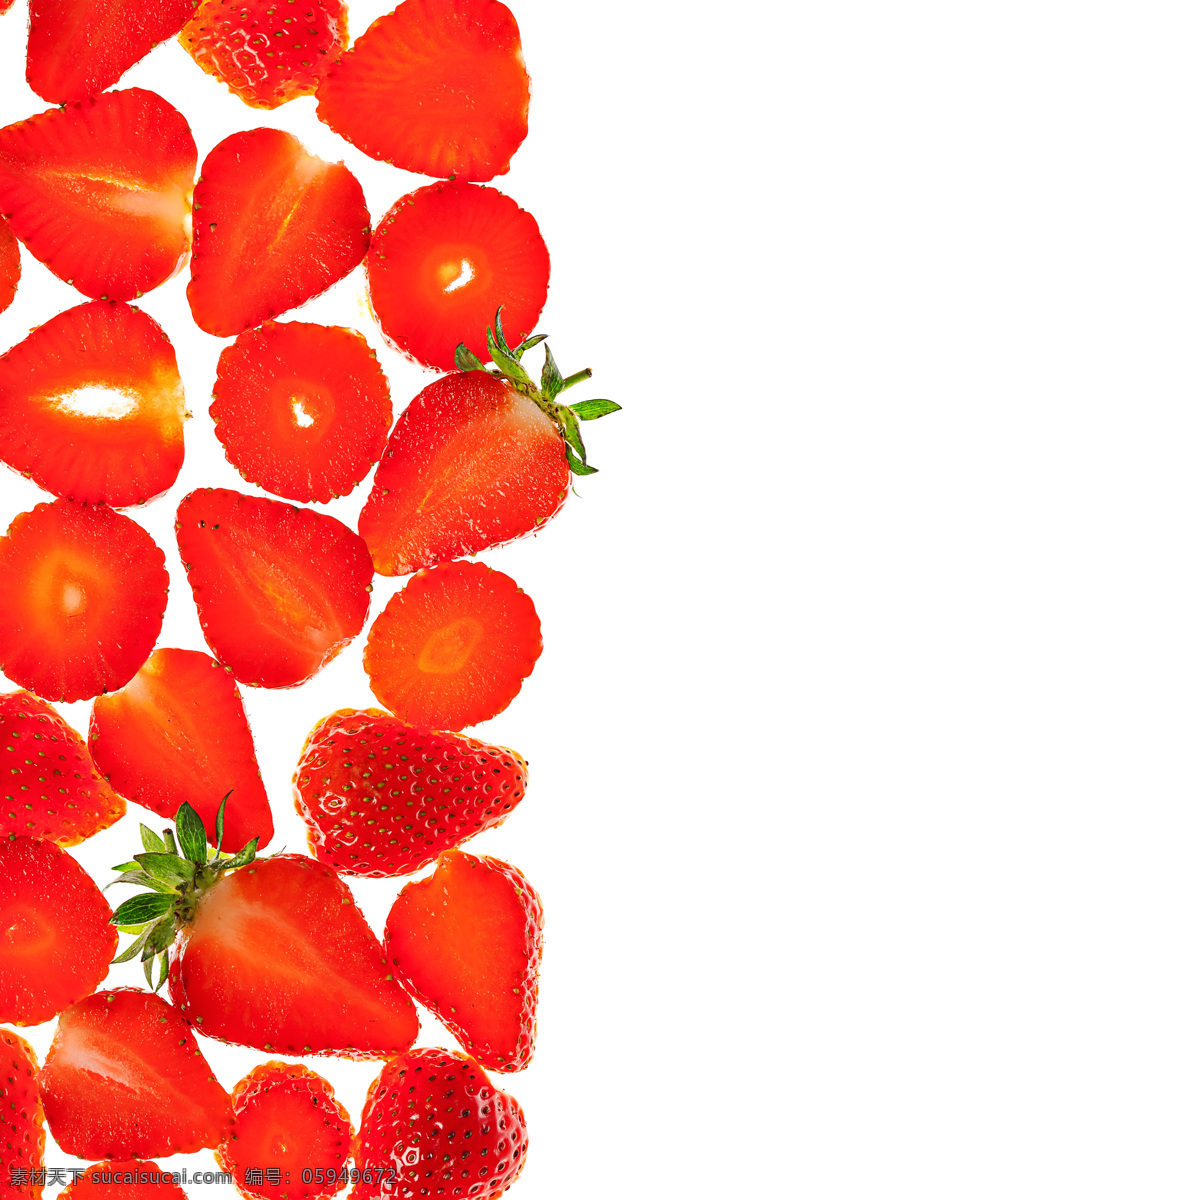 草莓果肉摄影 草莓果肉 草莓 新鲜草莓 草莓摄影 新鲜水果 水果蔬菜 餐饮美食 白色